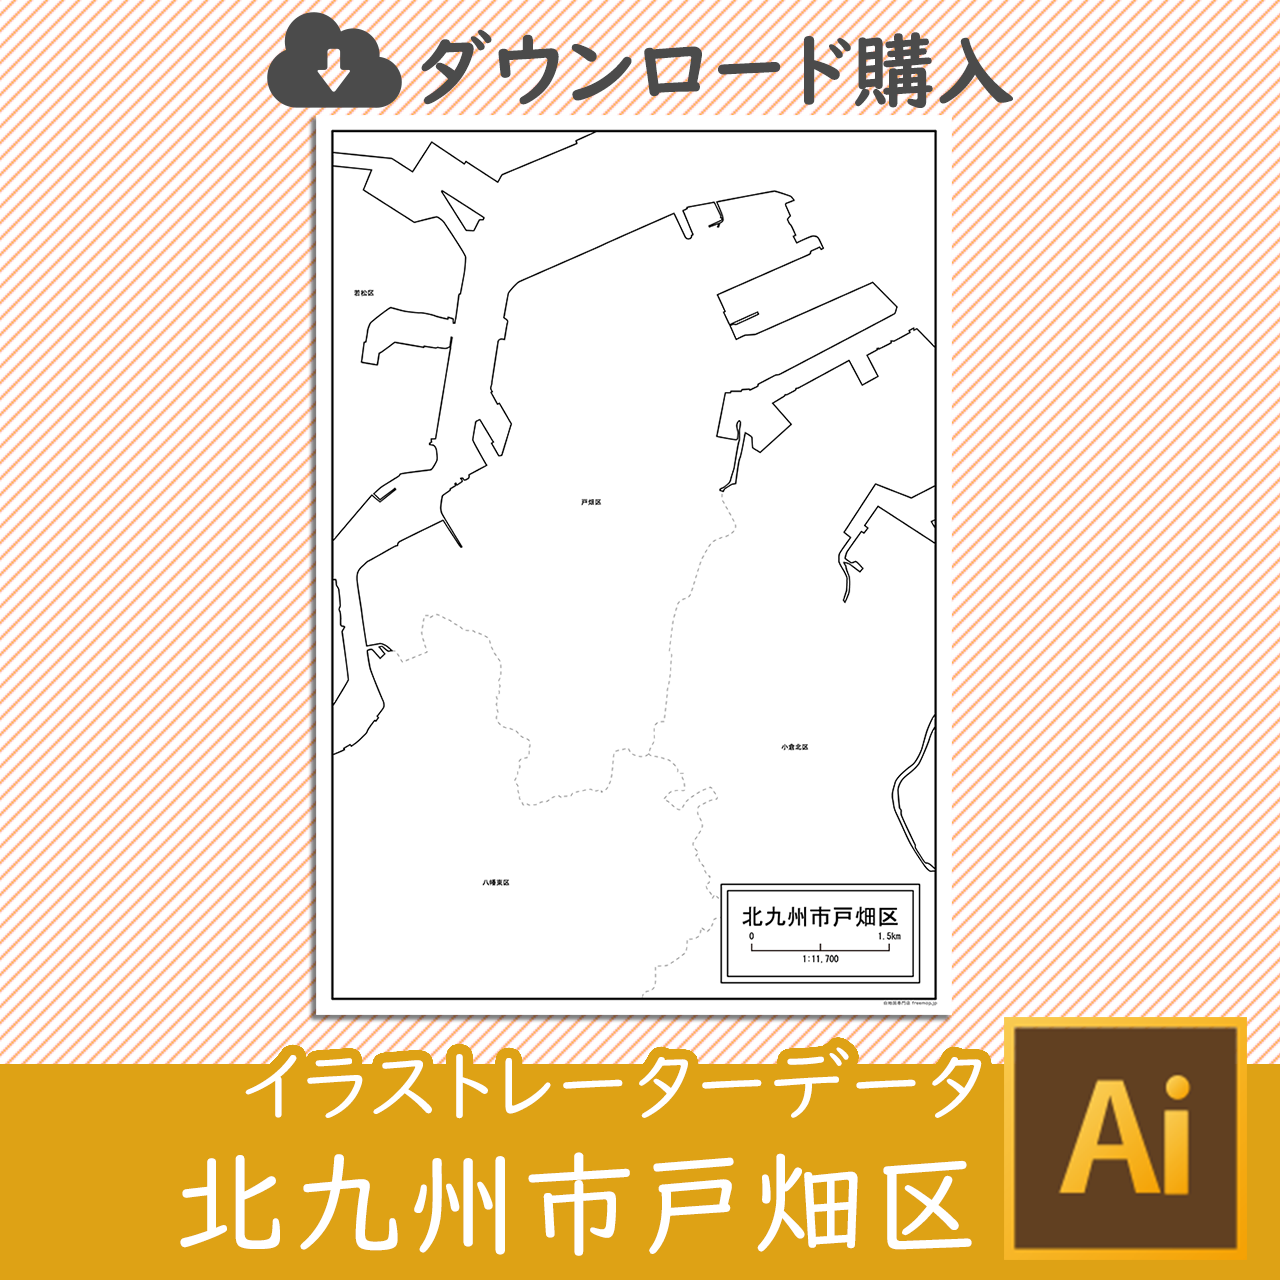 北九州市戸畑区のaiデータのサムネイル画像